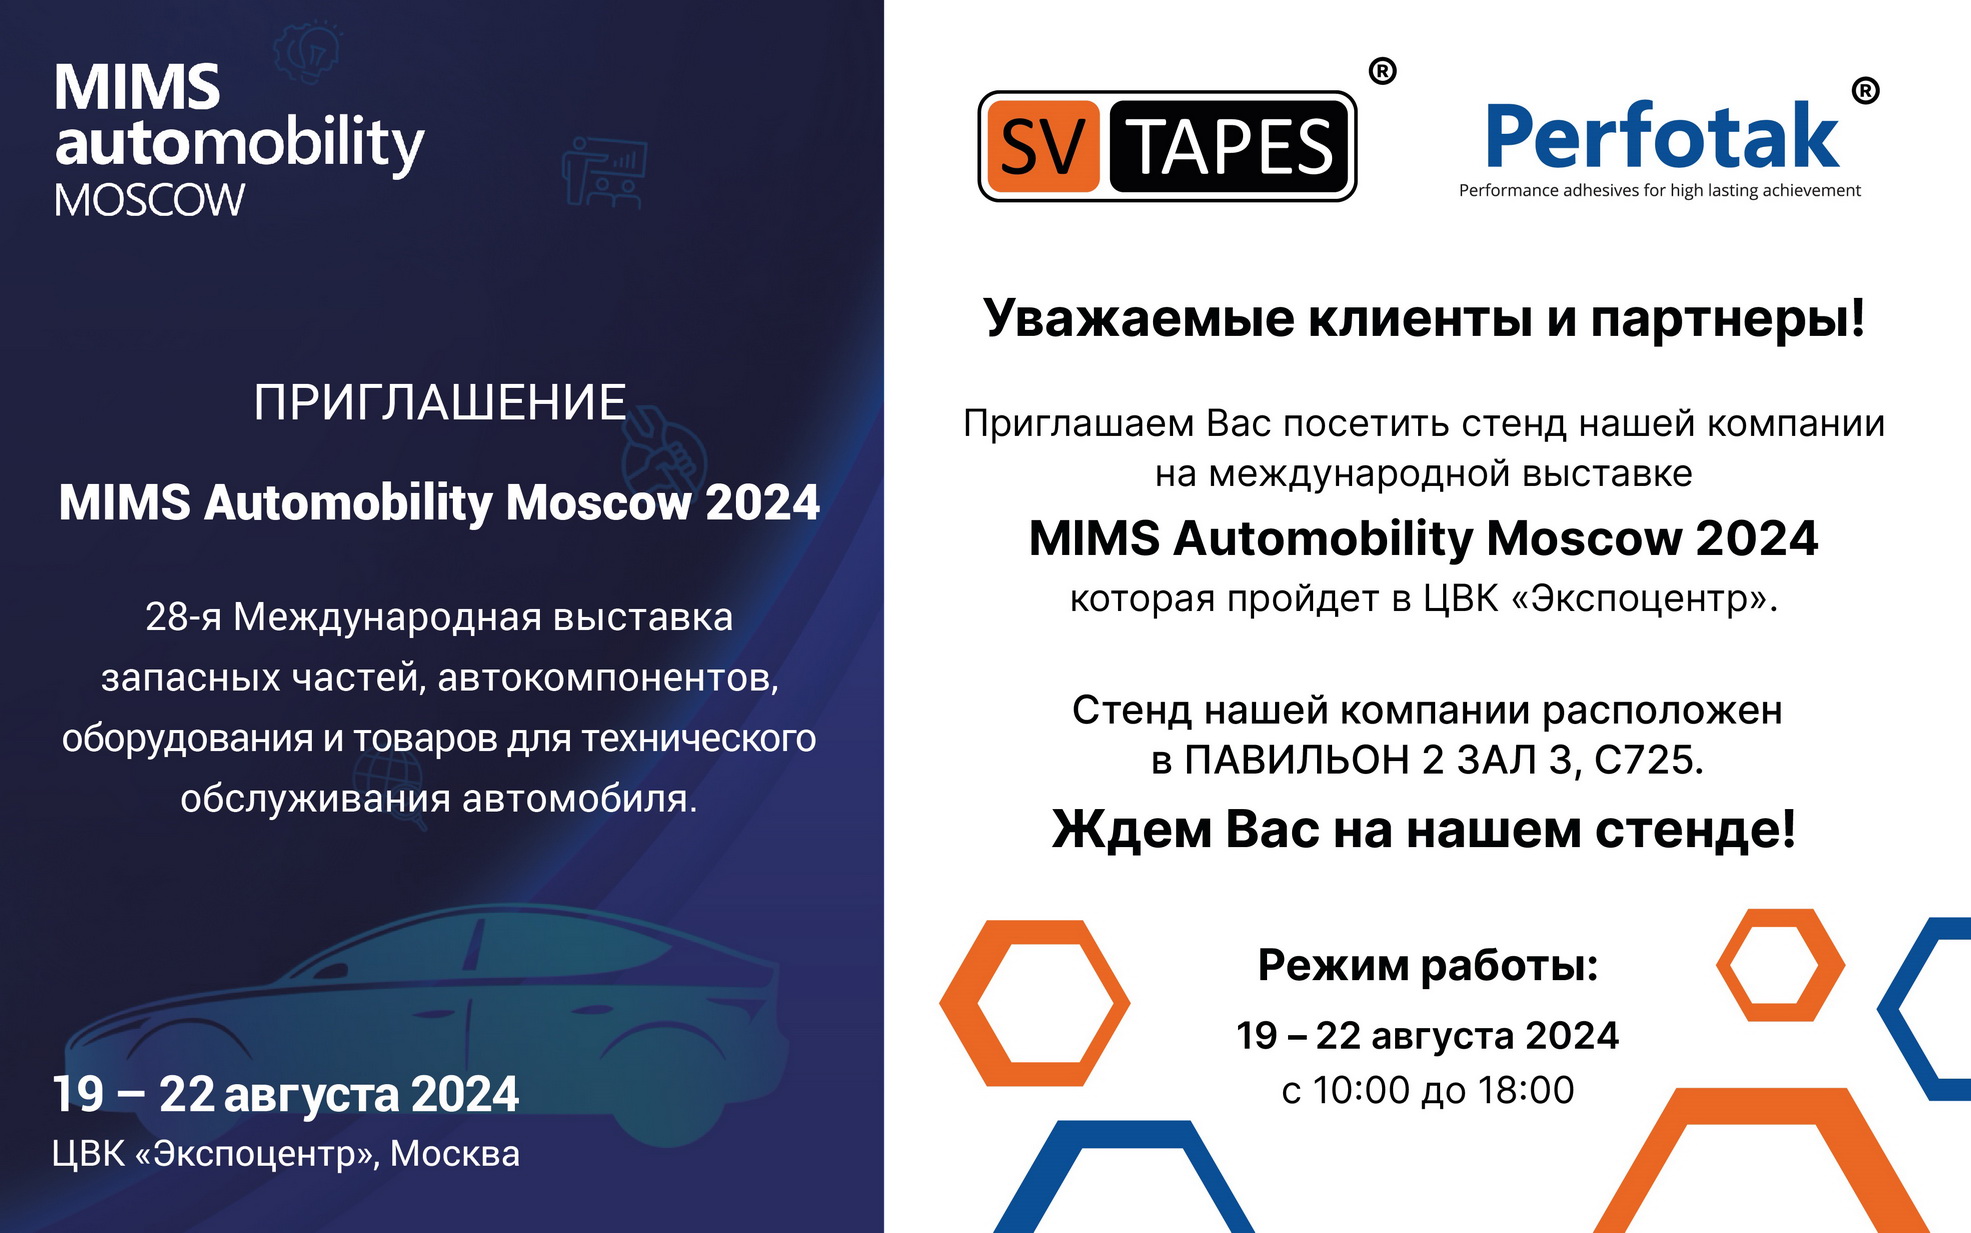 Приглашаем Вас посетить стенд нашей компании на международной выставке MIMS Automobility Moscow 2024